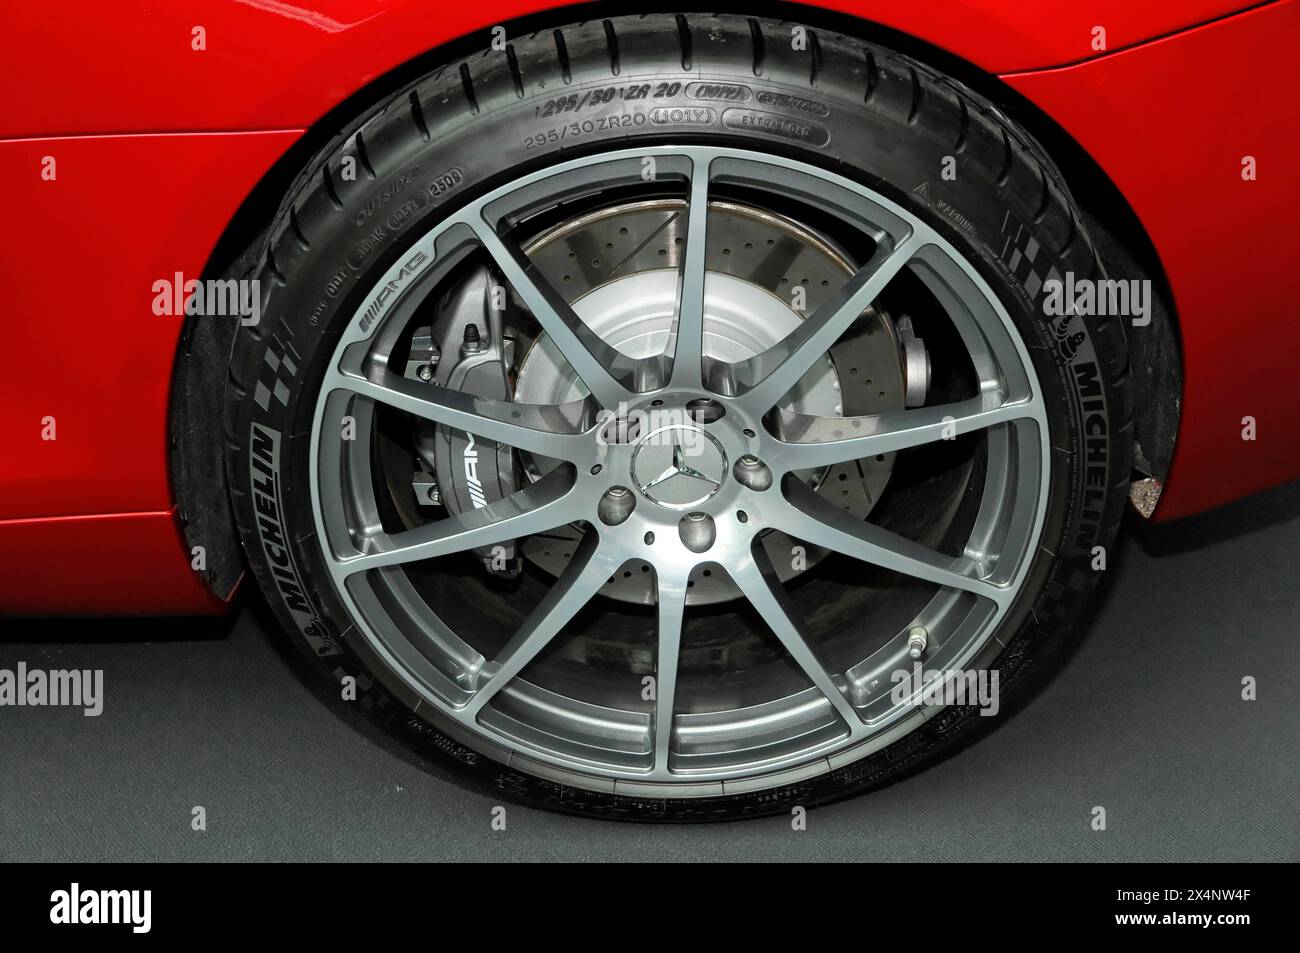 Image détaillée de la roue AMG d'une voiture de sport Mercedes, y compris la bande de roulement des pneus, Stuttgart Messe, Stuttgart, Bade-Wuerttemberg, Allemagne Banque D'Images